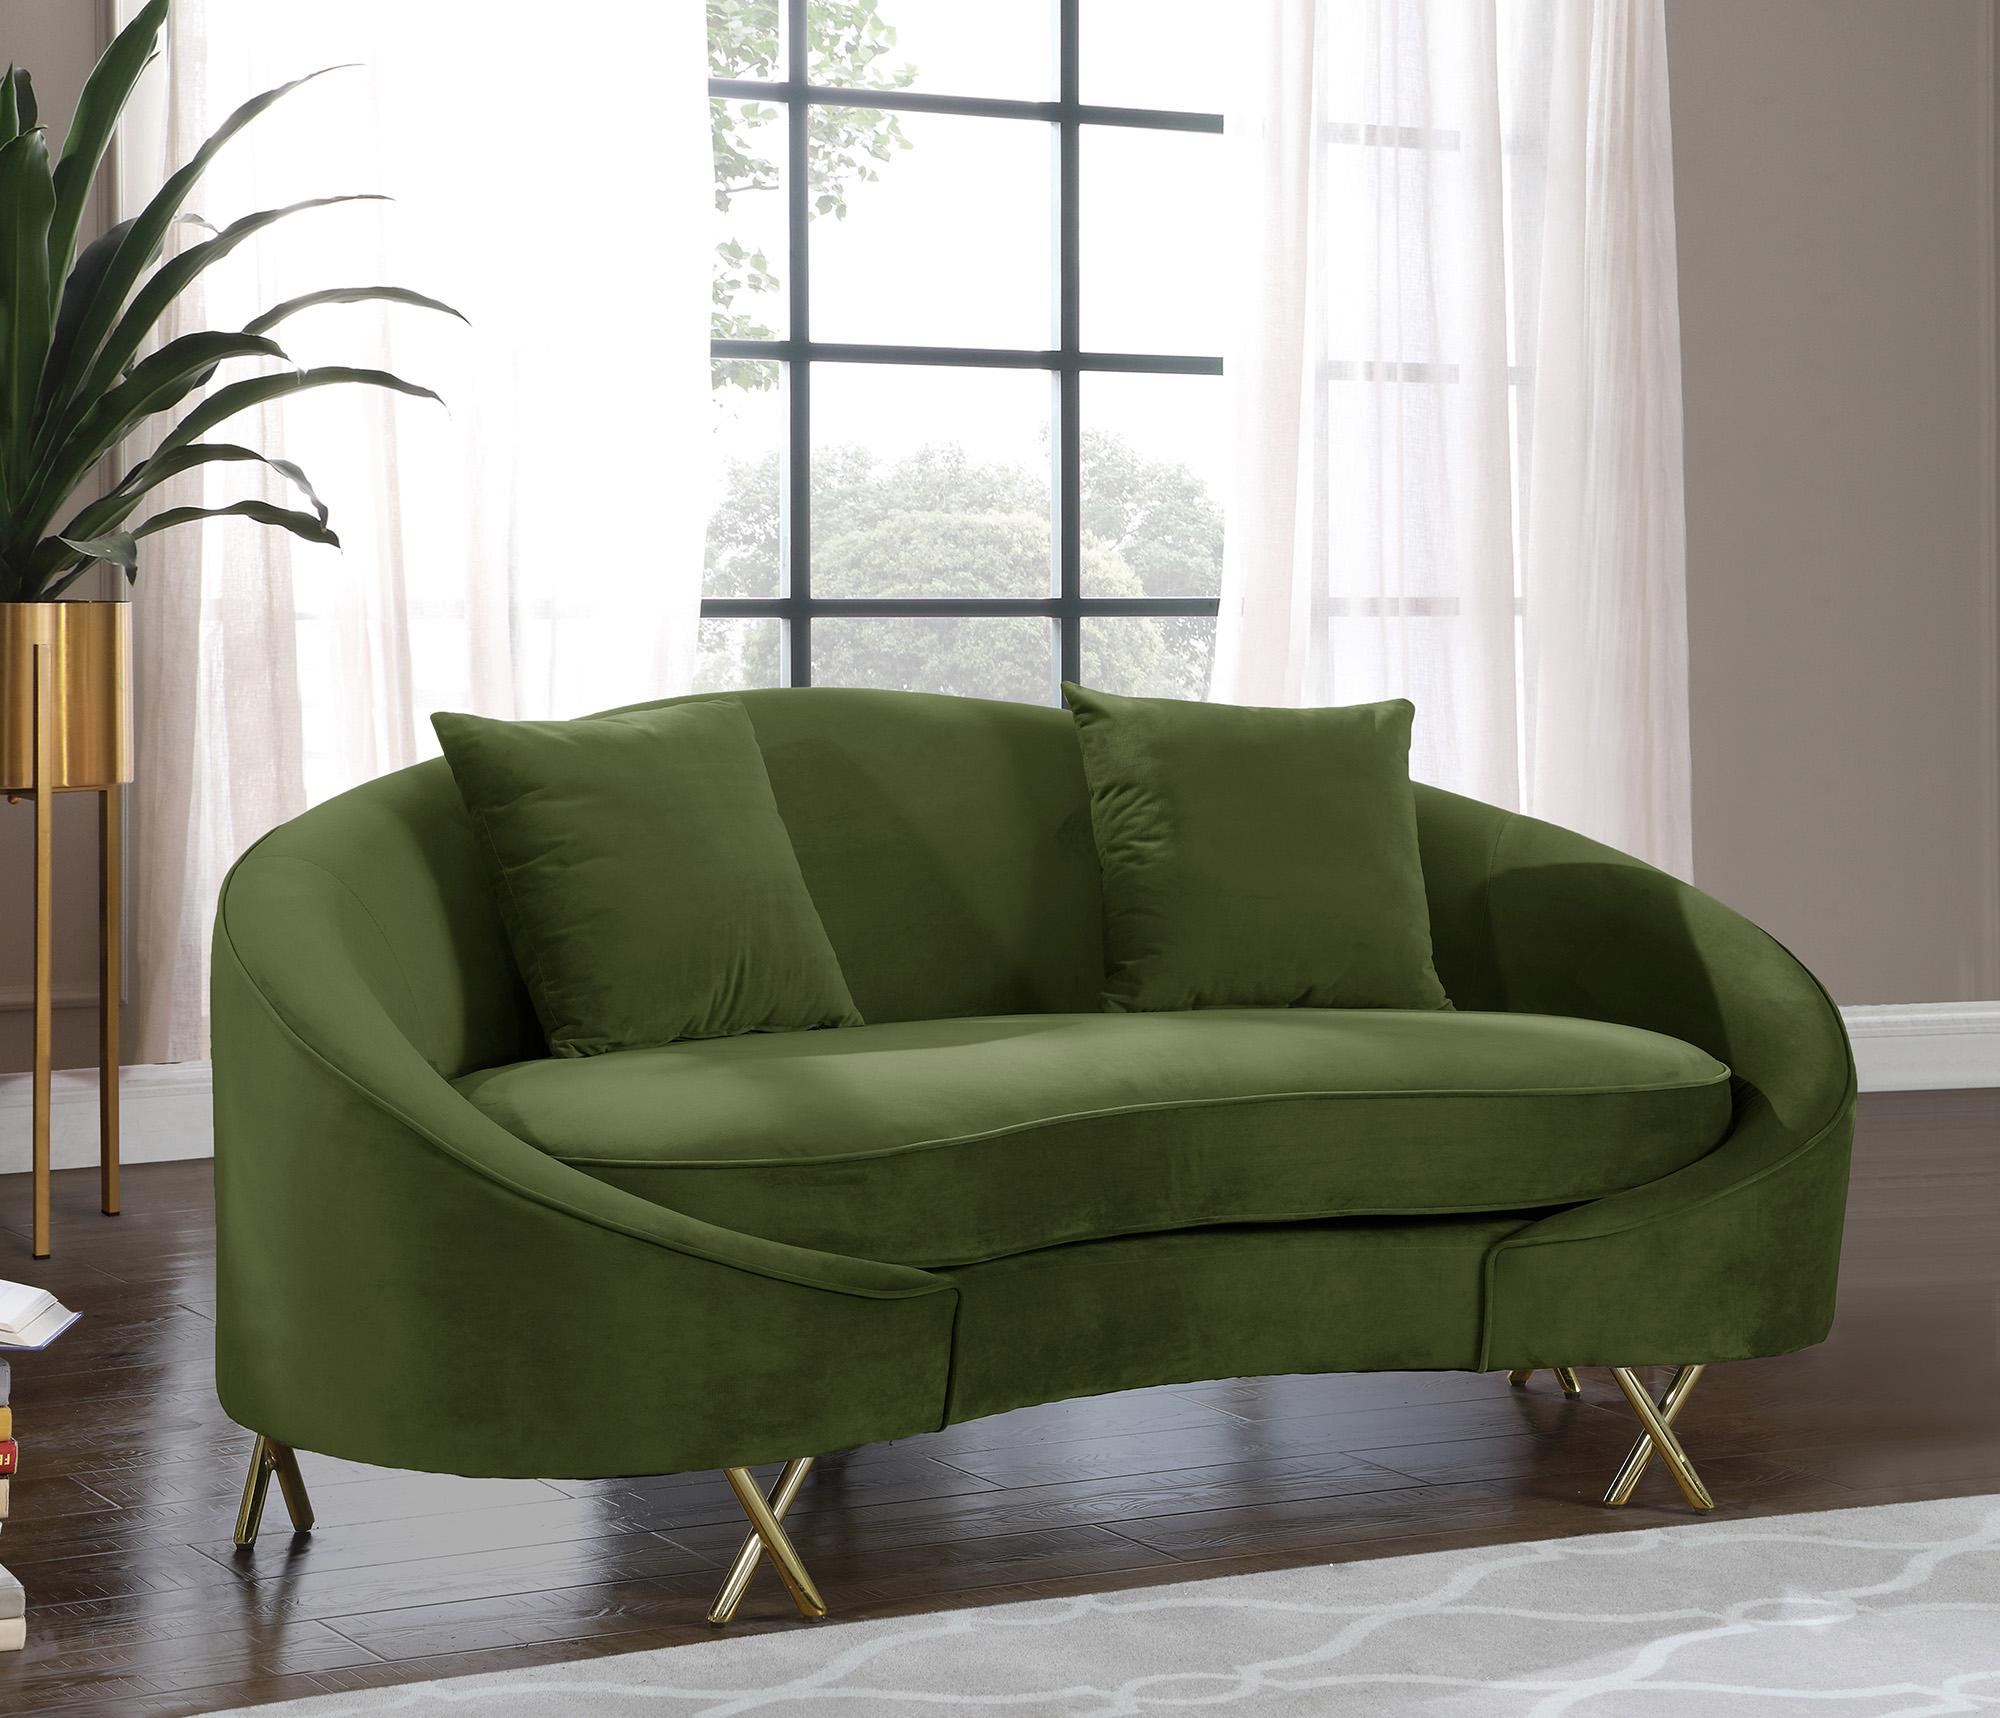 

    
Meridian Furniture SERPENTINE 679Olive-S-Set-2 Sofa Set Olive 679Olive-S-Set-2
